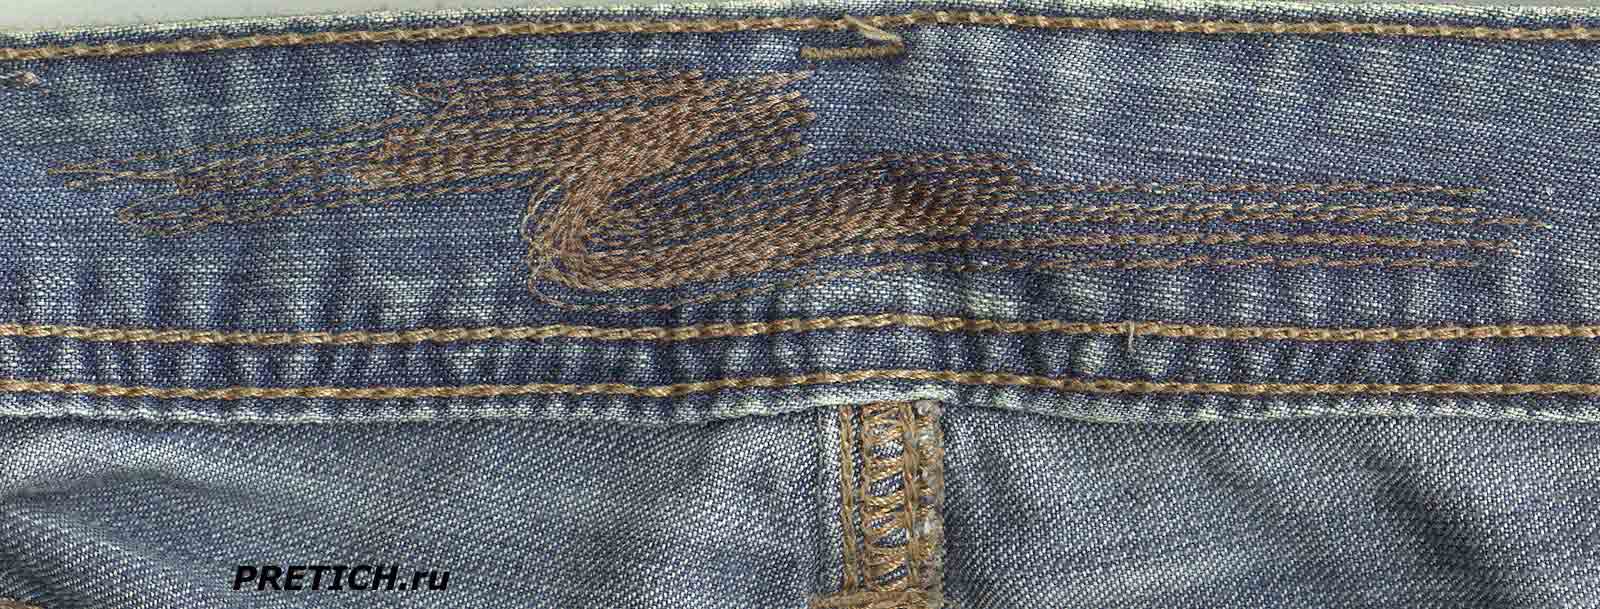 мужские джинсы Colin’s Jeans вышивка на поясе изнутри